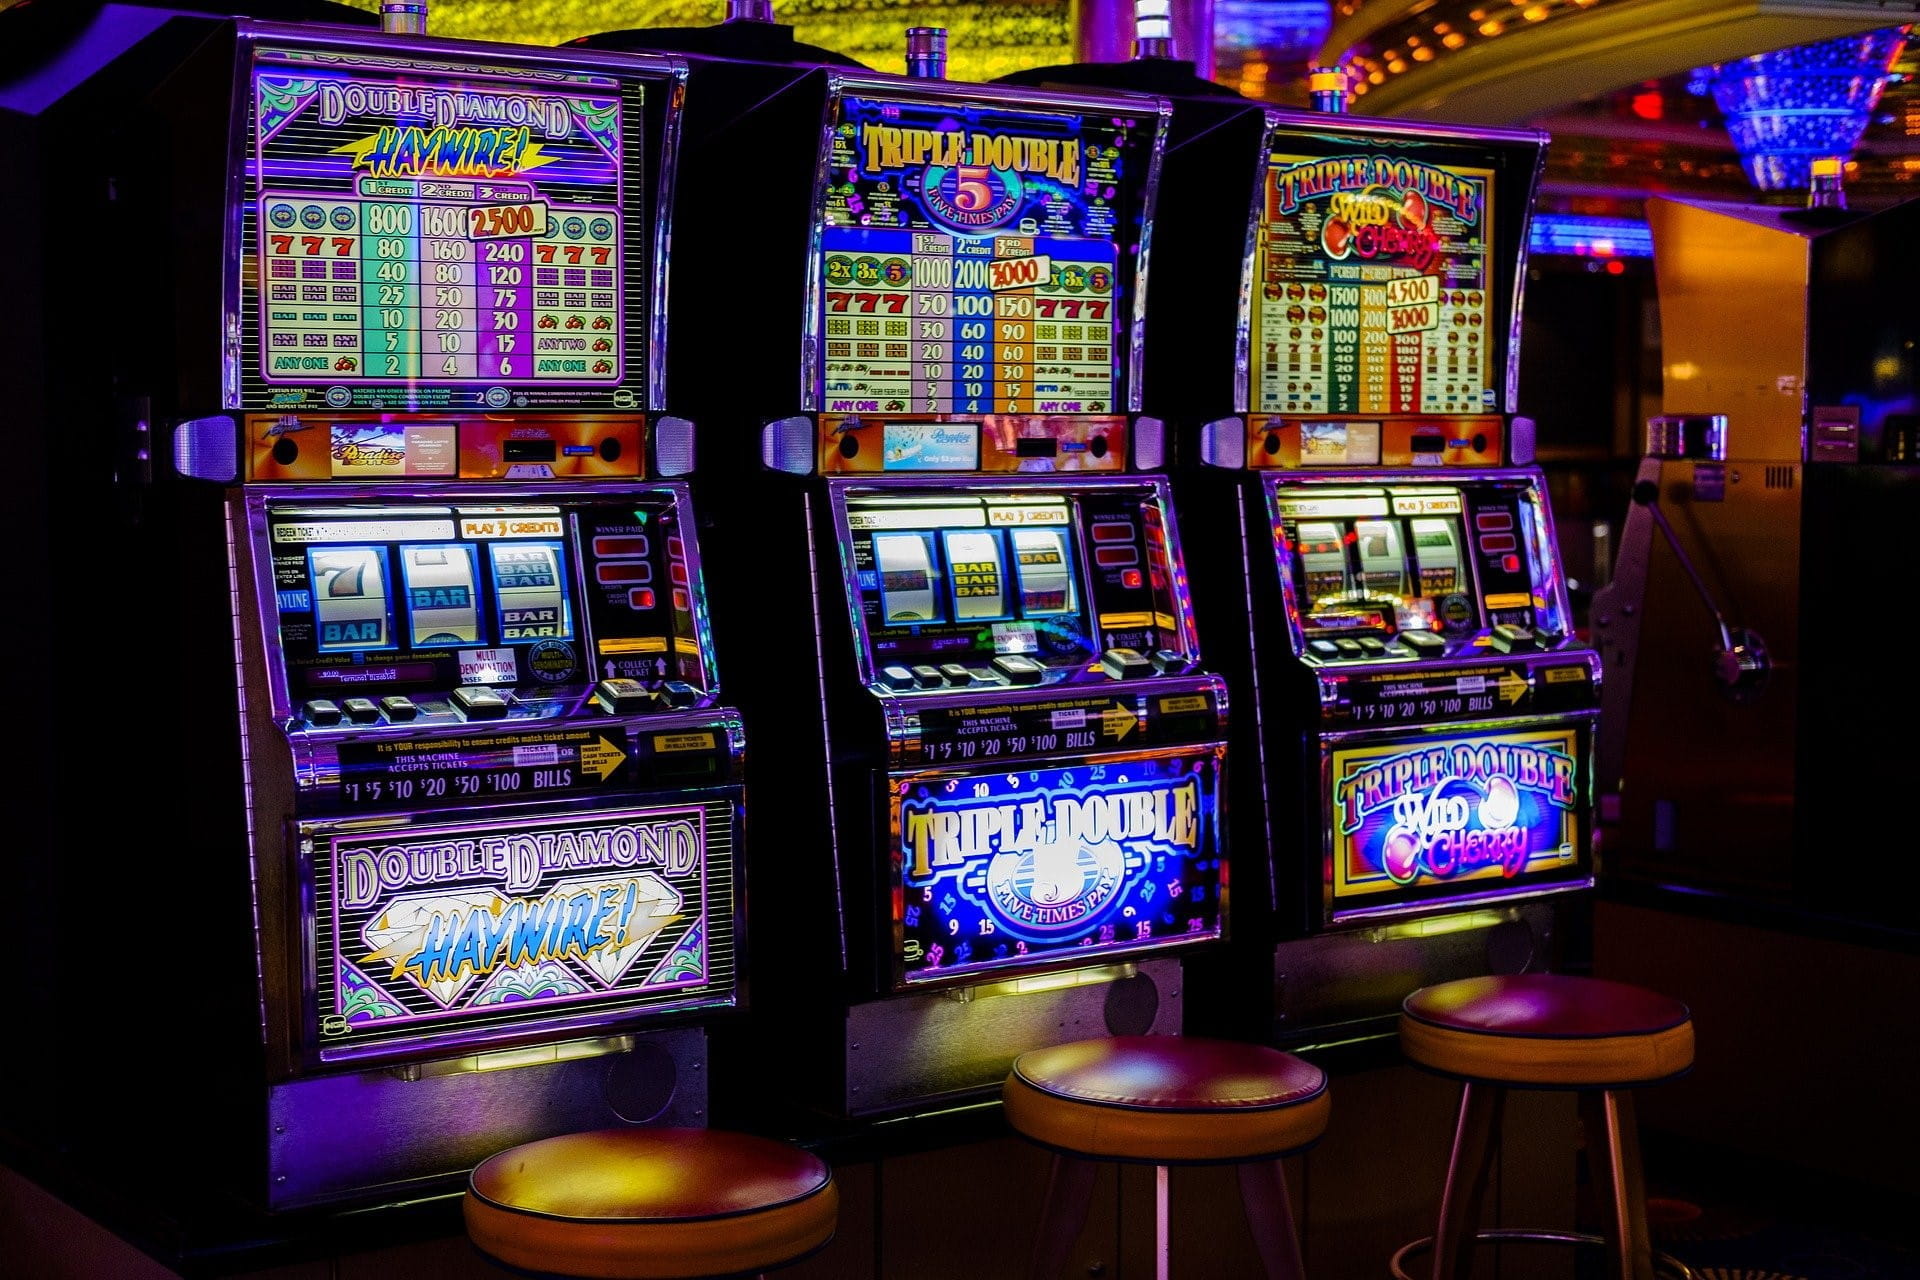 Spielautomaten stehen in Spielhallen, Casinos und anderen öffentlichen Locations.